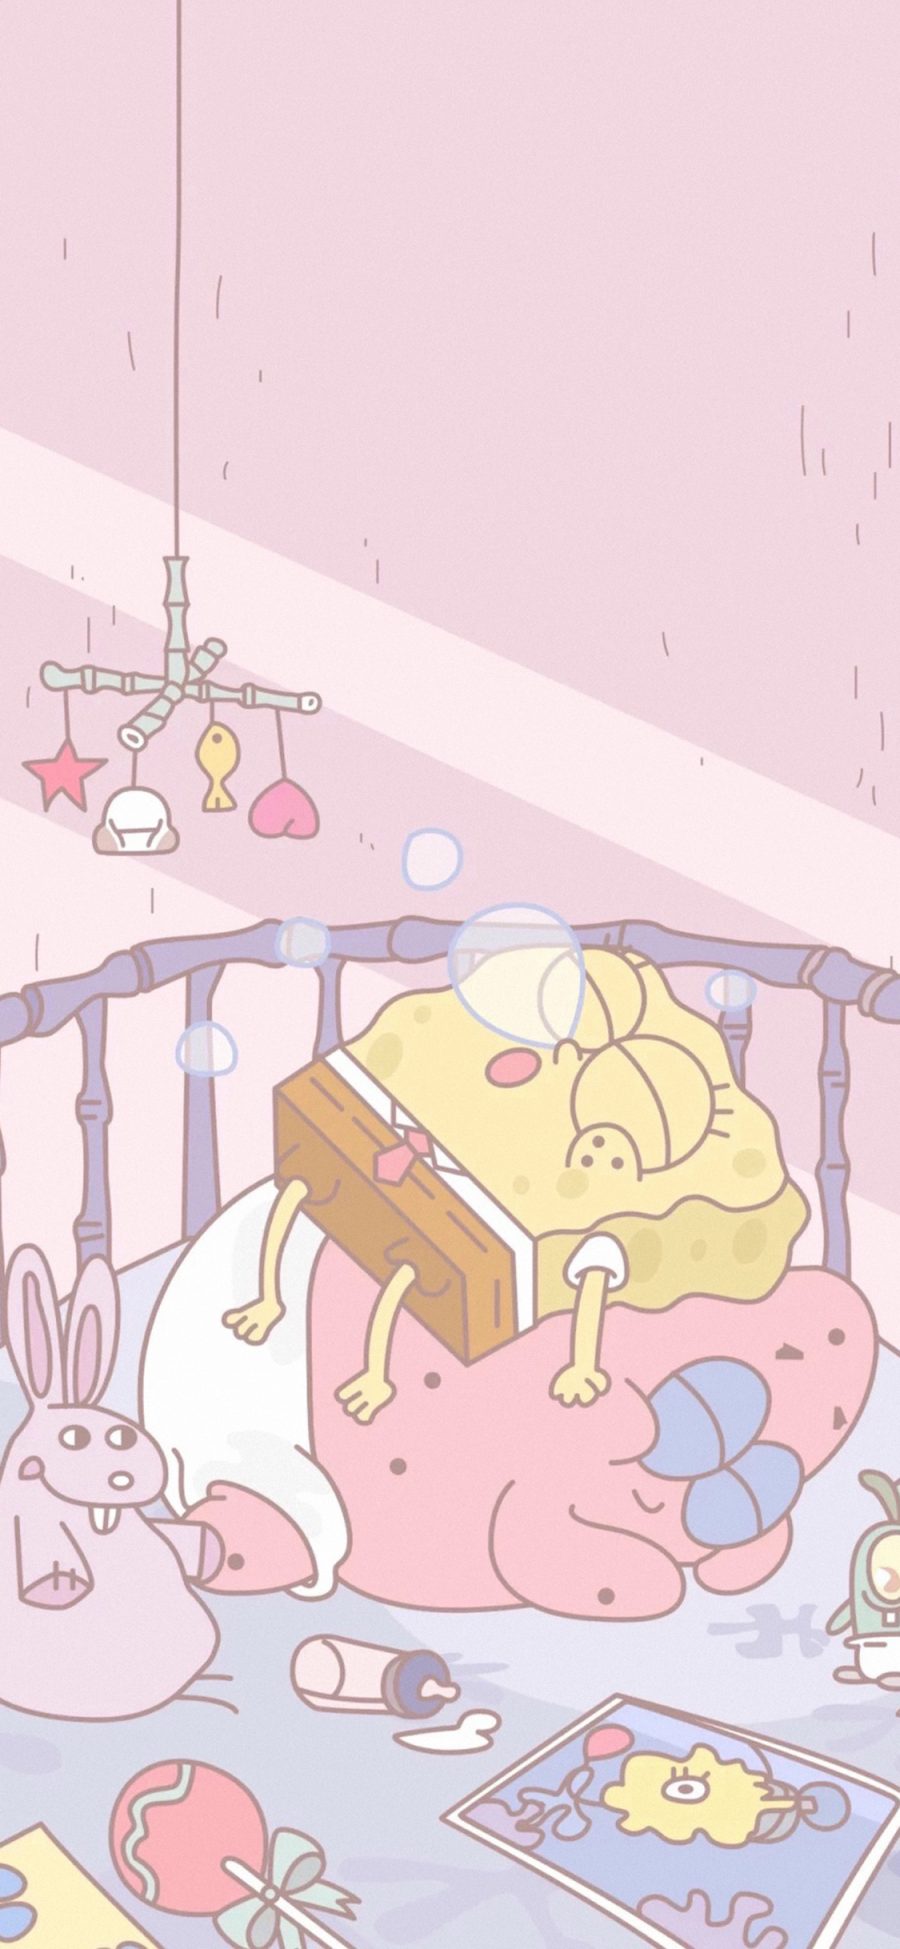 [2436×1125]海绵宝宝 派大星 粉色 卡通 可爱 睡觉 苹果手机动漫壁纸图片